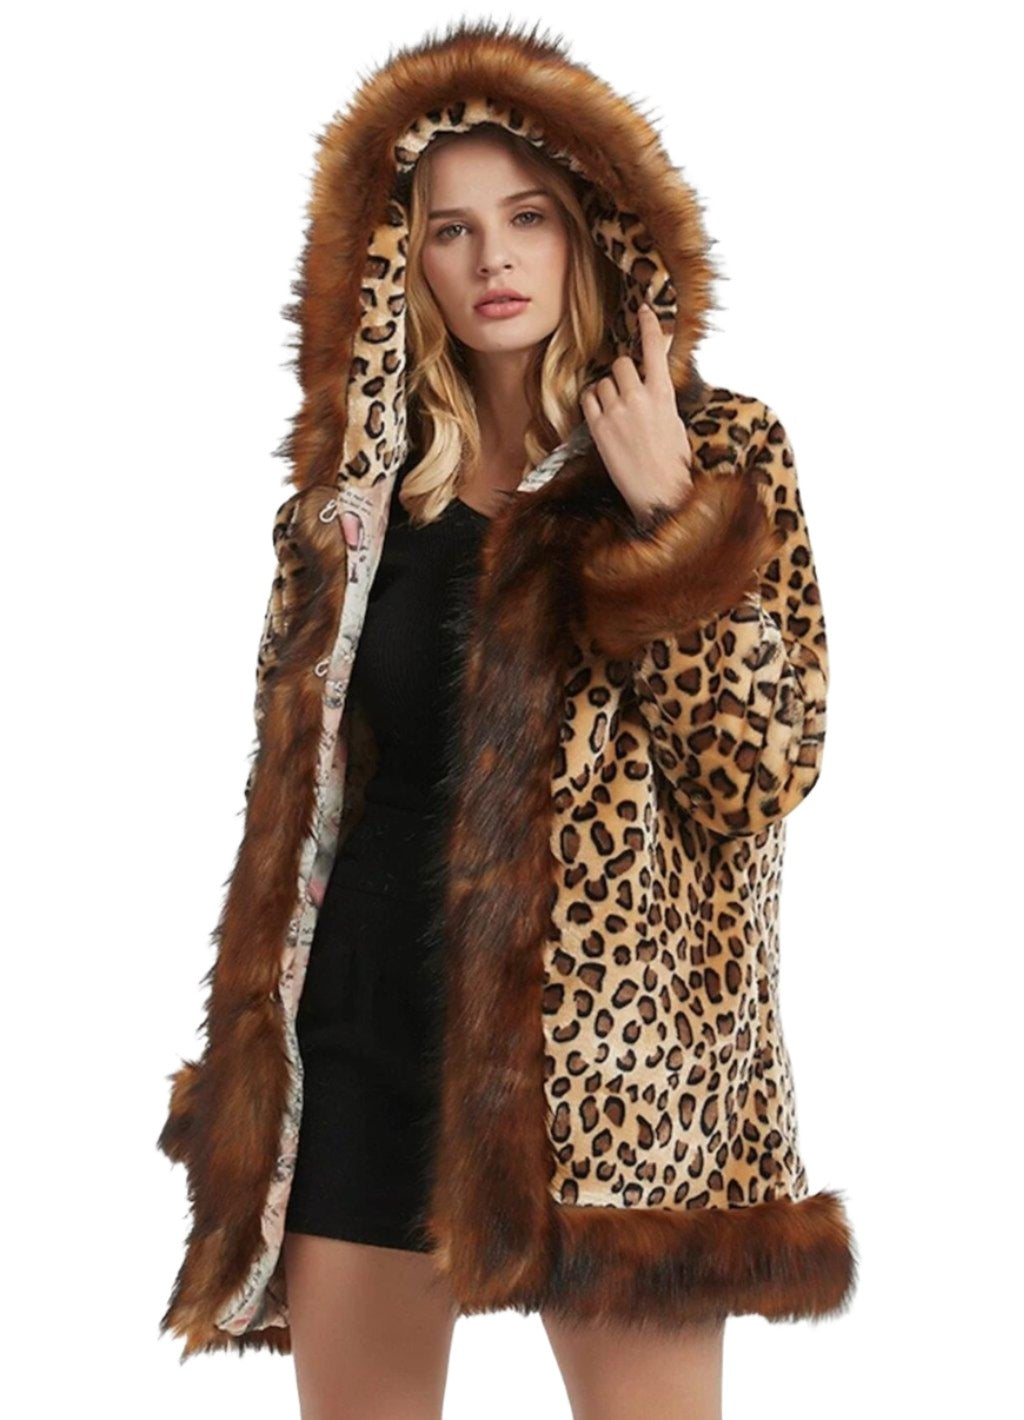 Women's Coats & Jackets Womens Leopard Print Hooded Faux Fur Collar Jacket